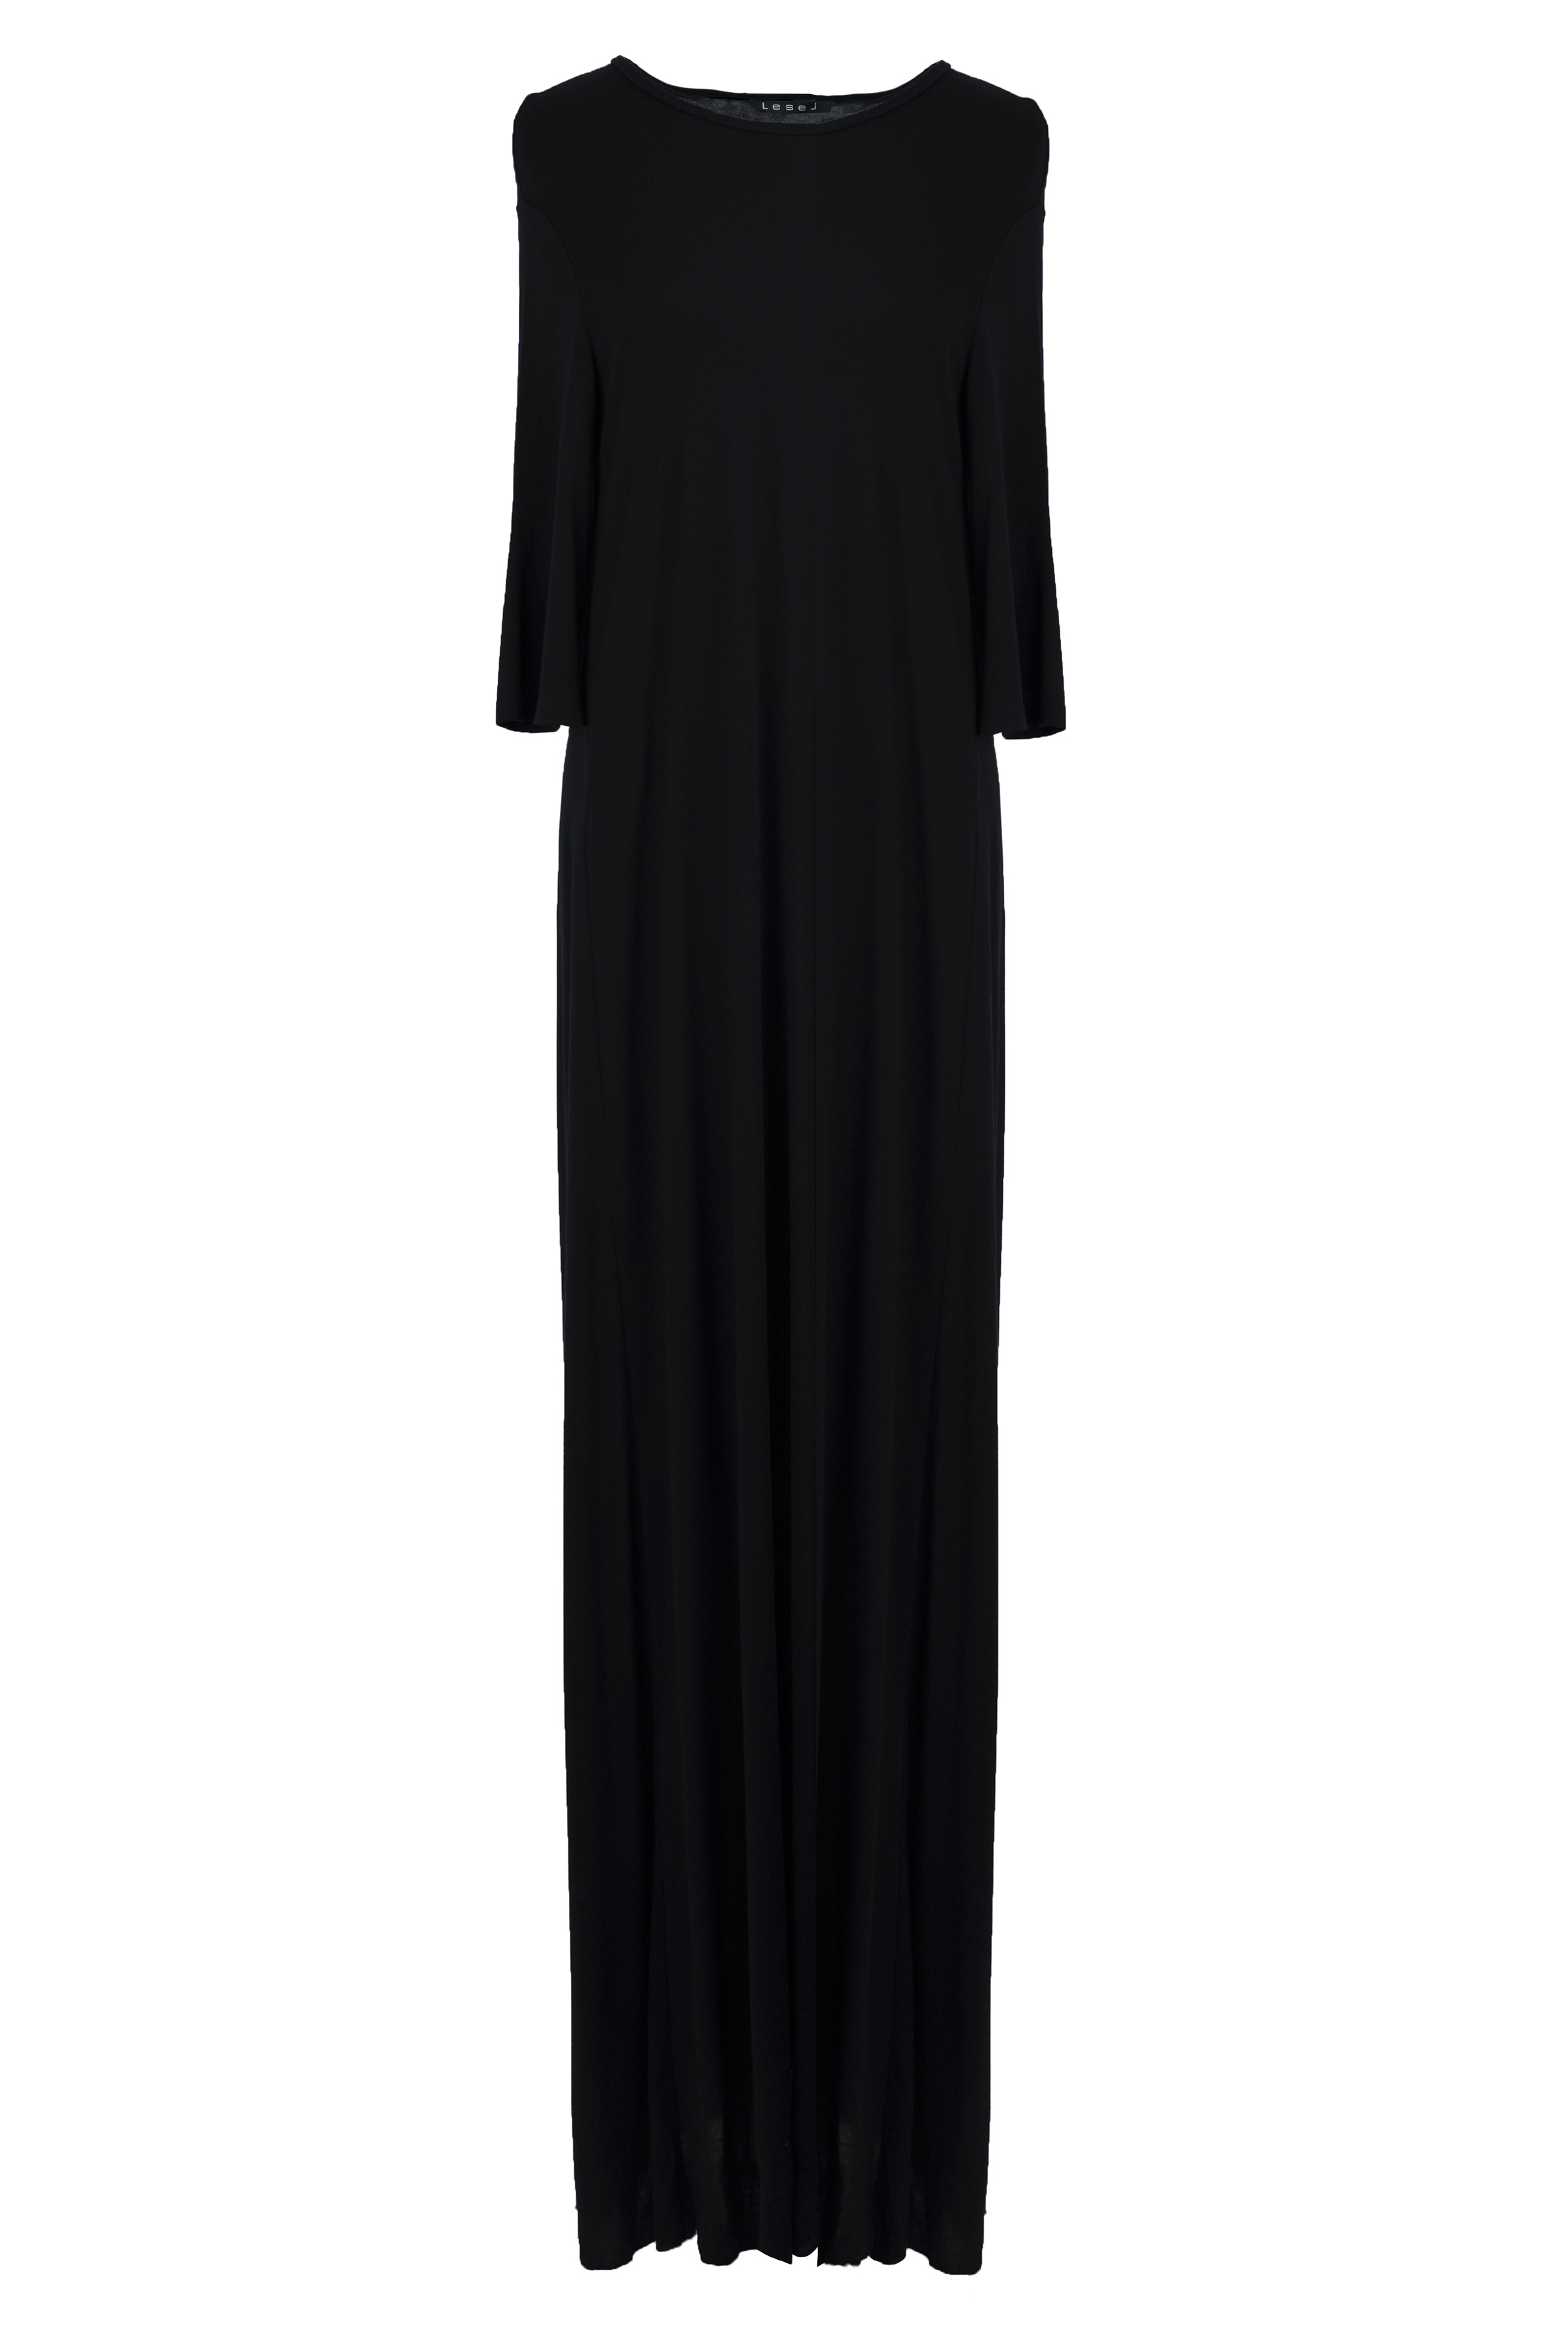 Платье база широкое длинное, короткий рукав 00 Черный (noir) от Lesel (Лесель)! Заказывайте по ✆ 8 (800) 777 02 37